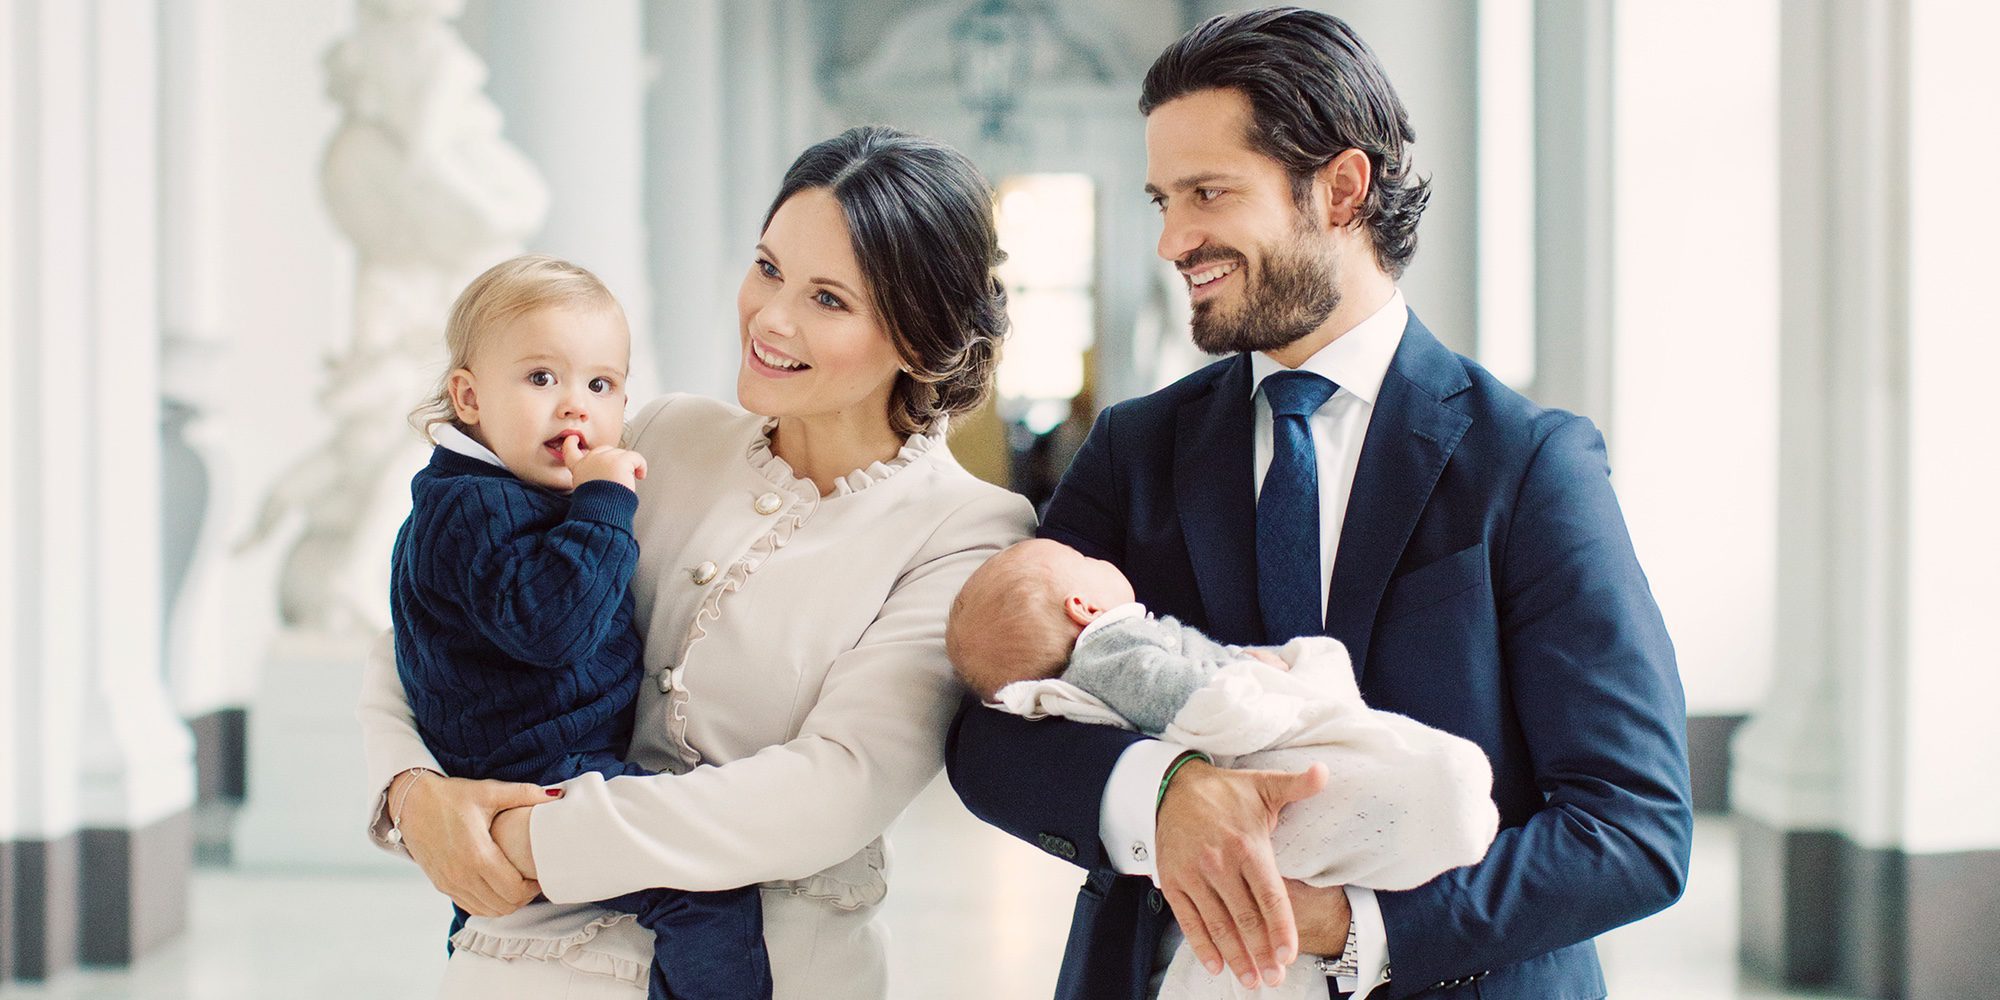 Primera foto de familia de Carlos Felipe de Suecia y Sofia Hellqvist con sus hijos Alejandro y Gabriel